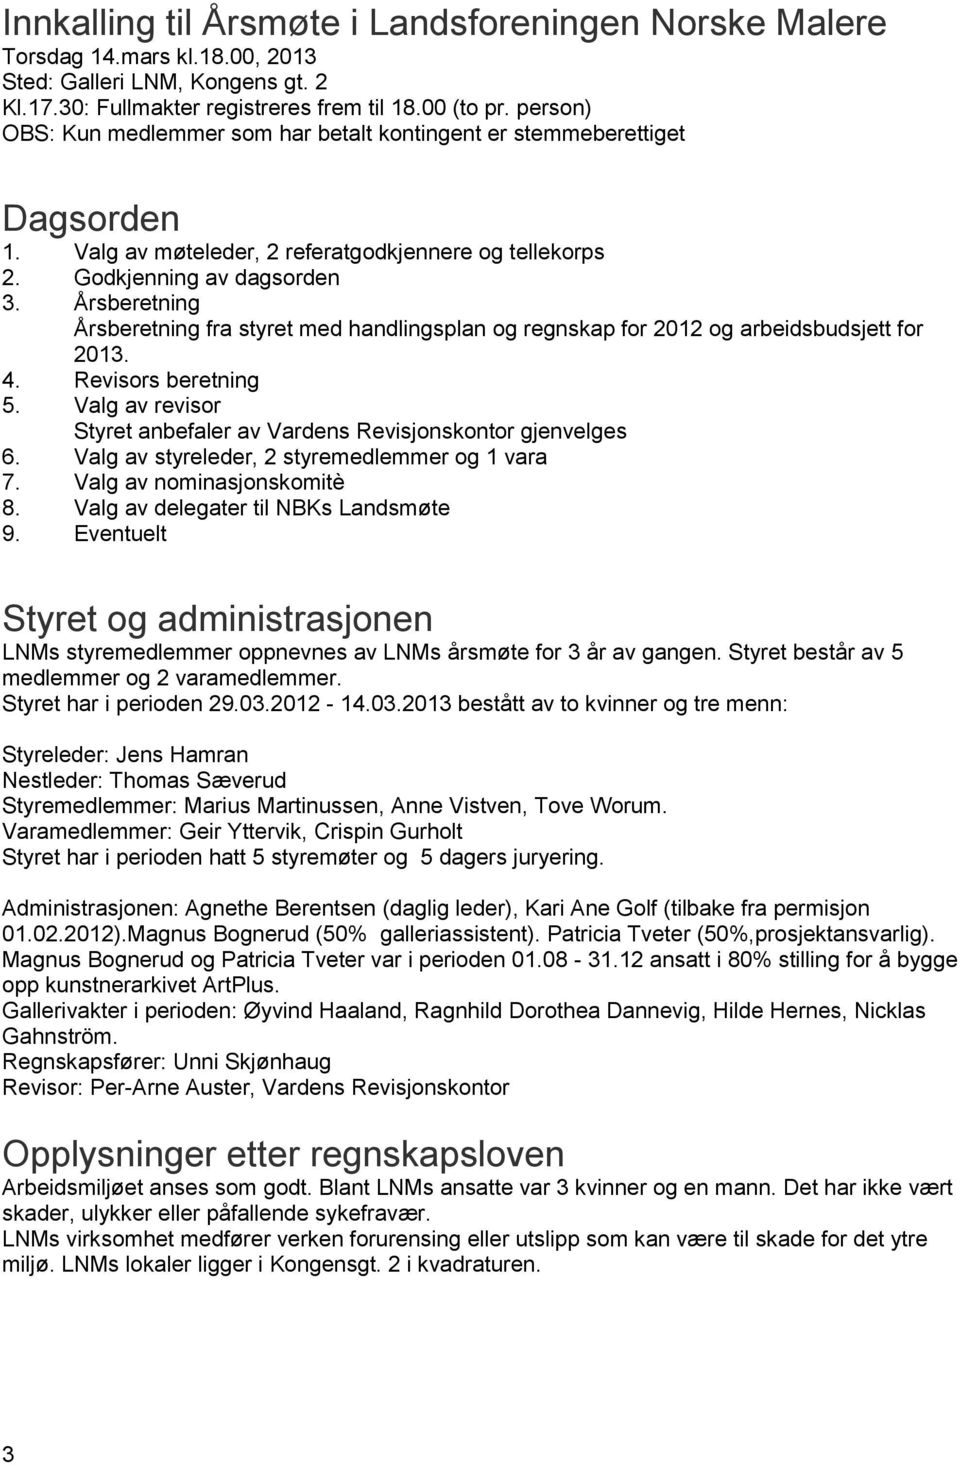 Årsberetning Årsberetning fra styret med handlingsplan og regnskap for 2012 og arbeidsbudsjett for 2013. 4. Revisors beretning 5.